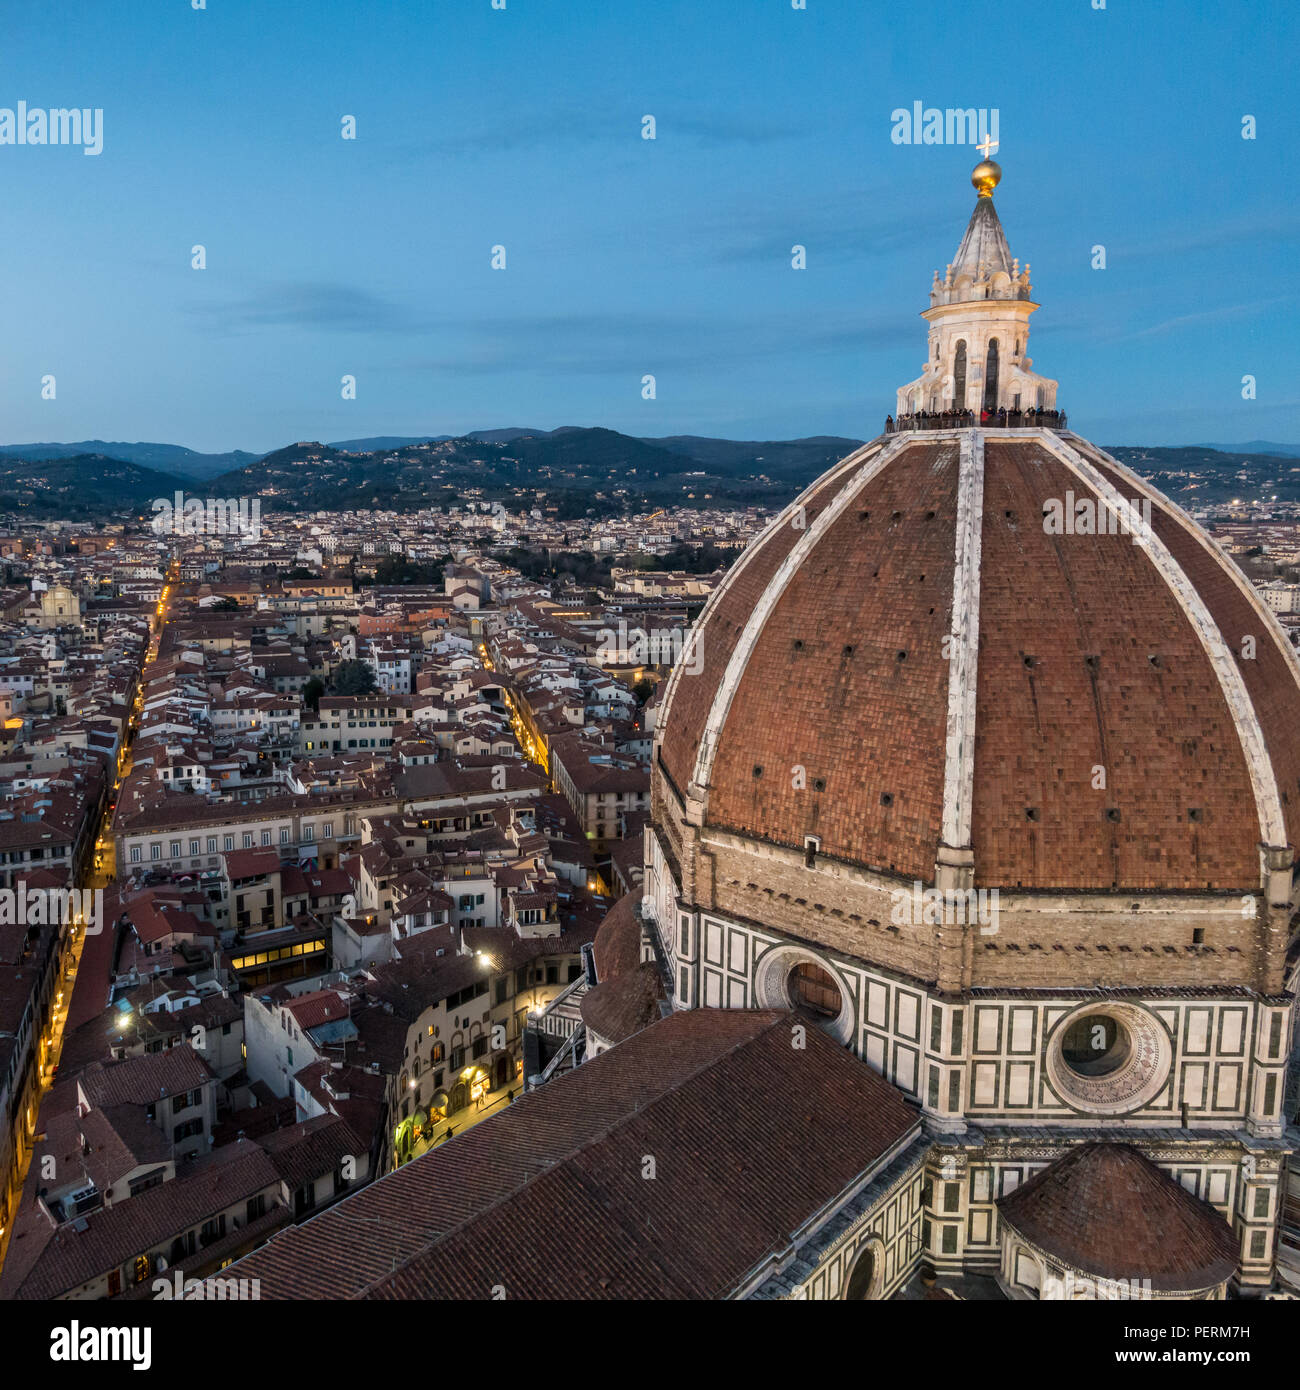 Florenz, Italien - 23. März 2018: Touristen sammeln auf der Kuppel von Florenz Duomo Kathedrale, den Sonnenuntergang zu beobachten. Stockfoto